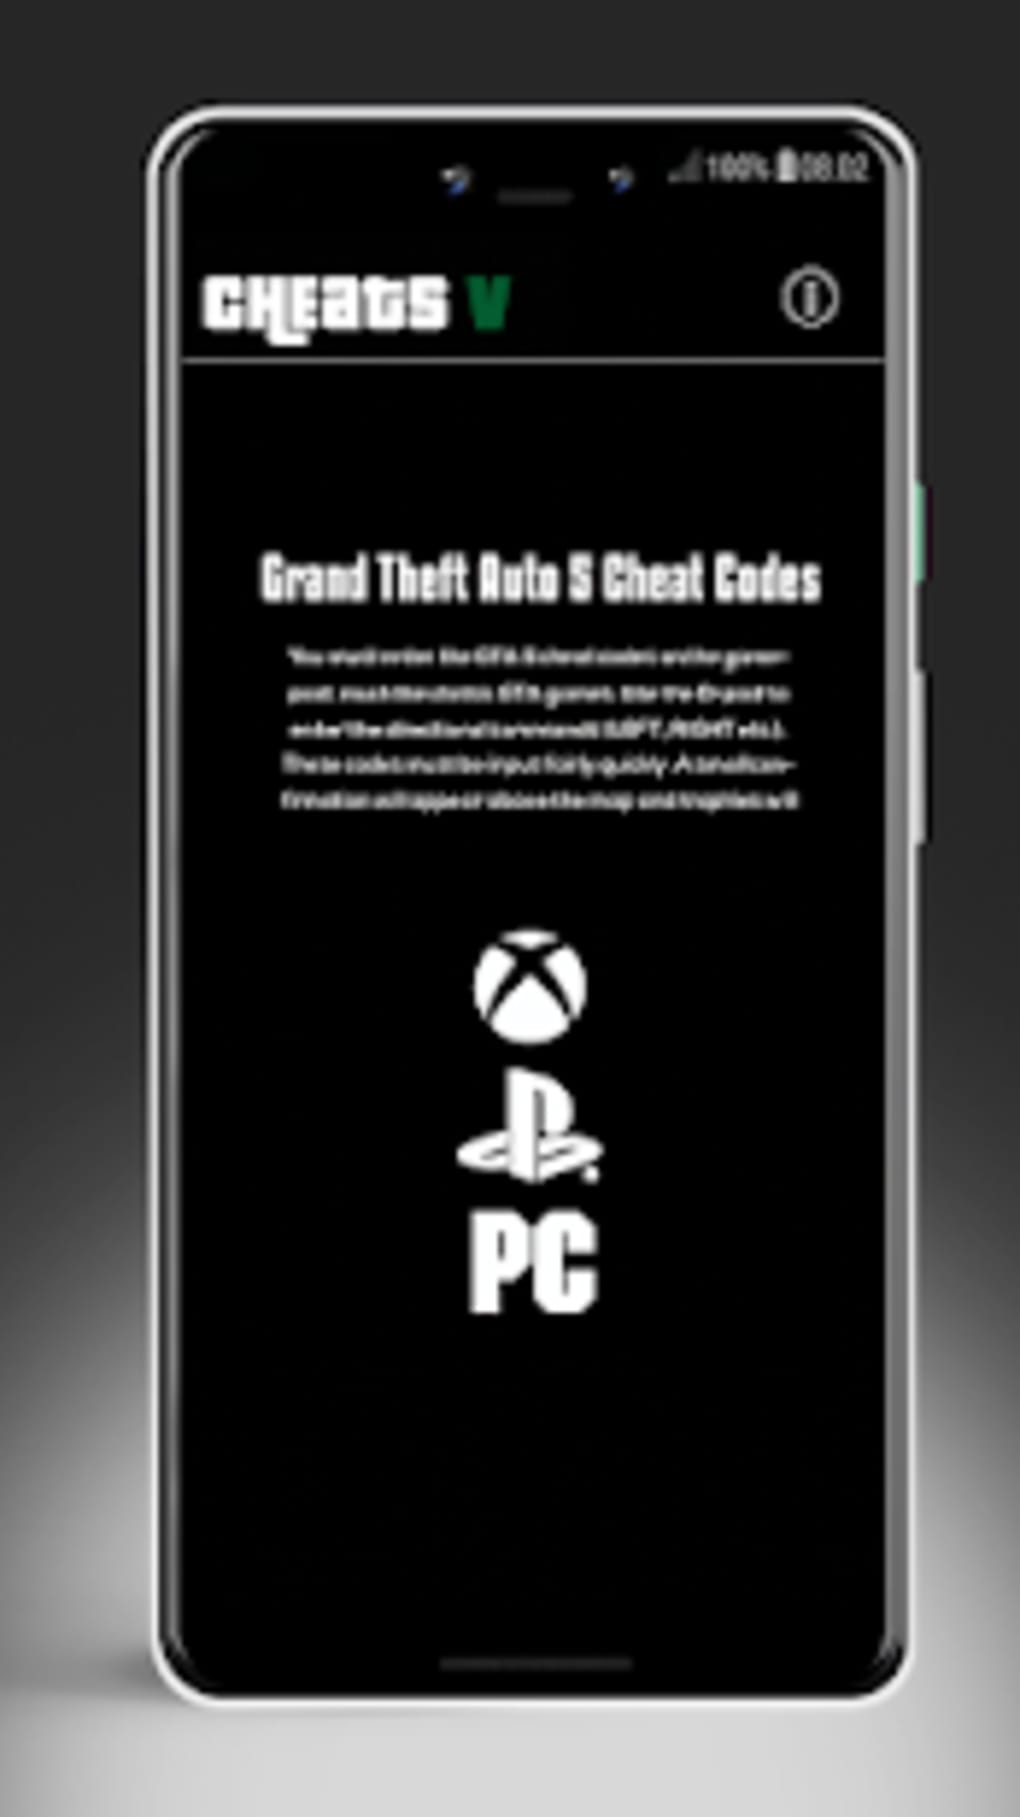 Baixar a última versão do Cheats for GTA - Códigos para todos jogos da  série Grand Theft Auto para iOS grátis em Português no CCM - CCM